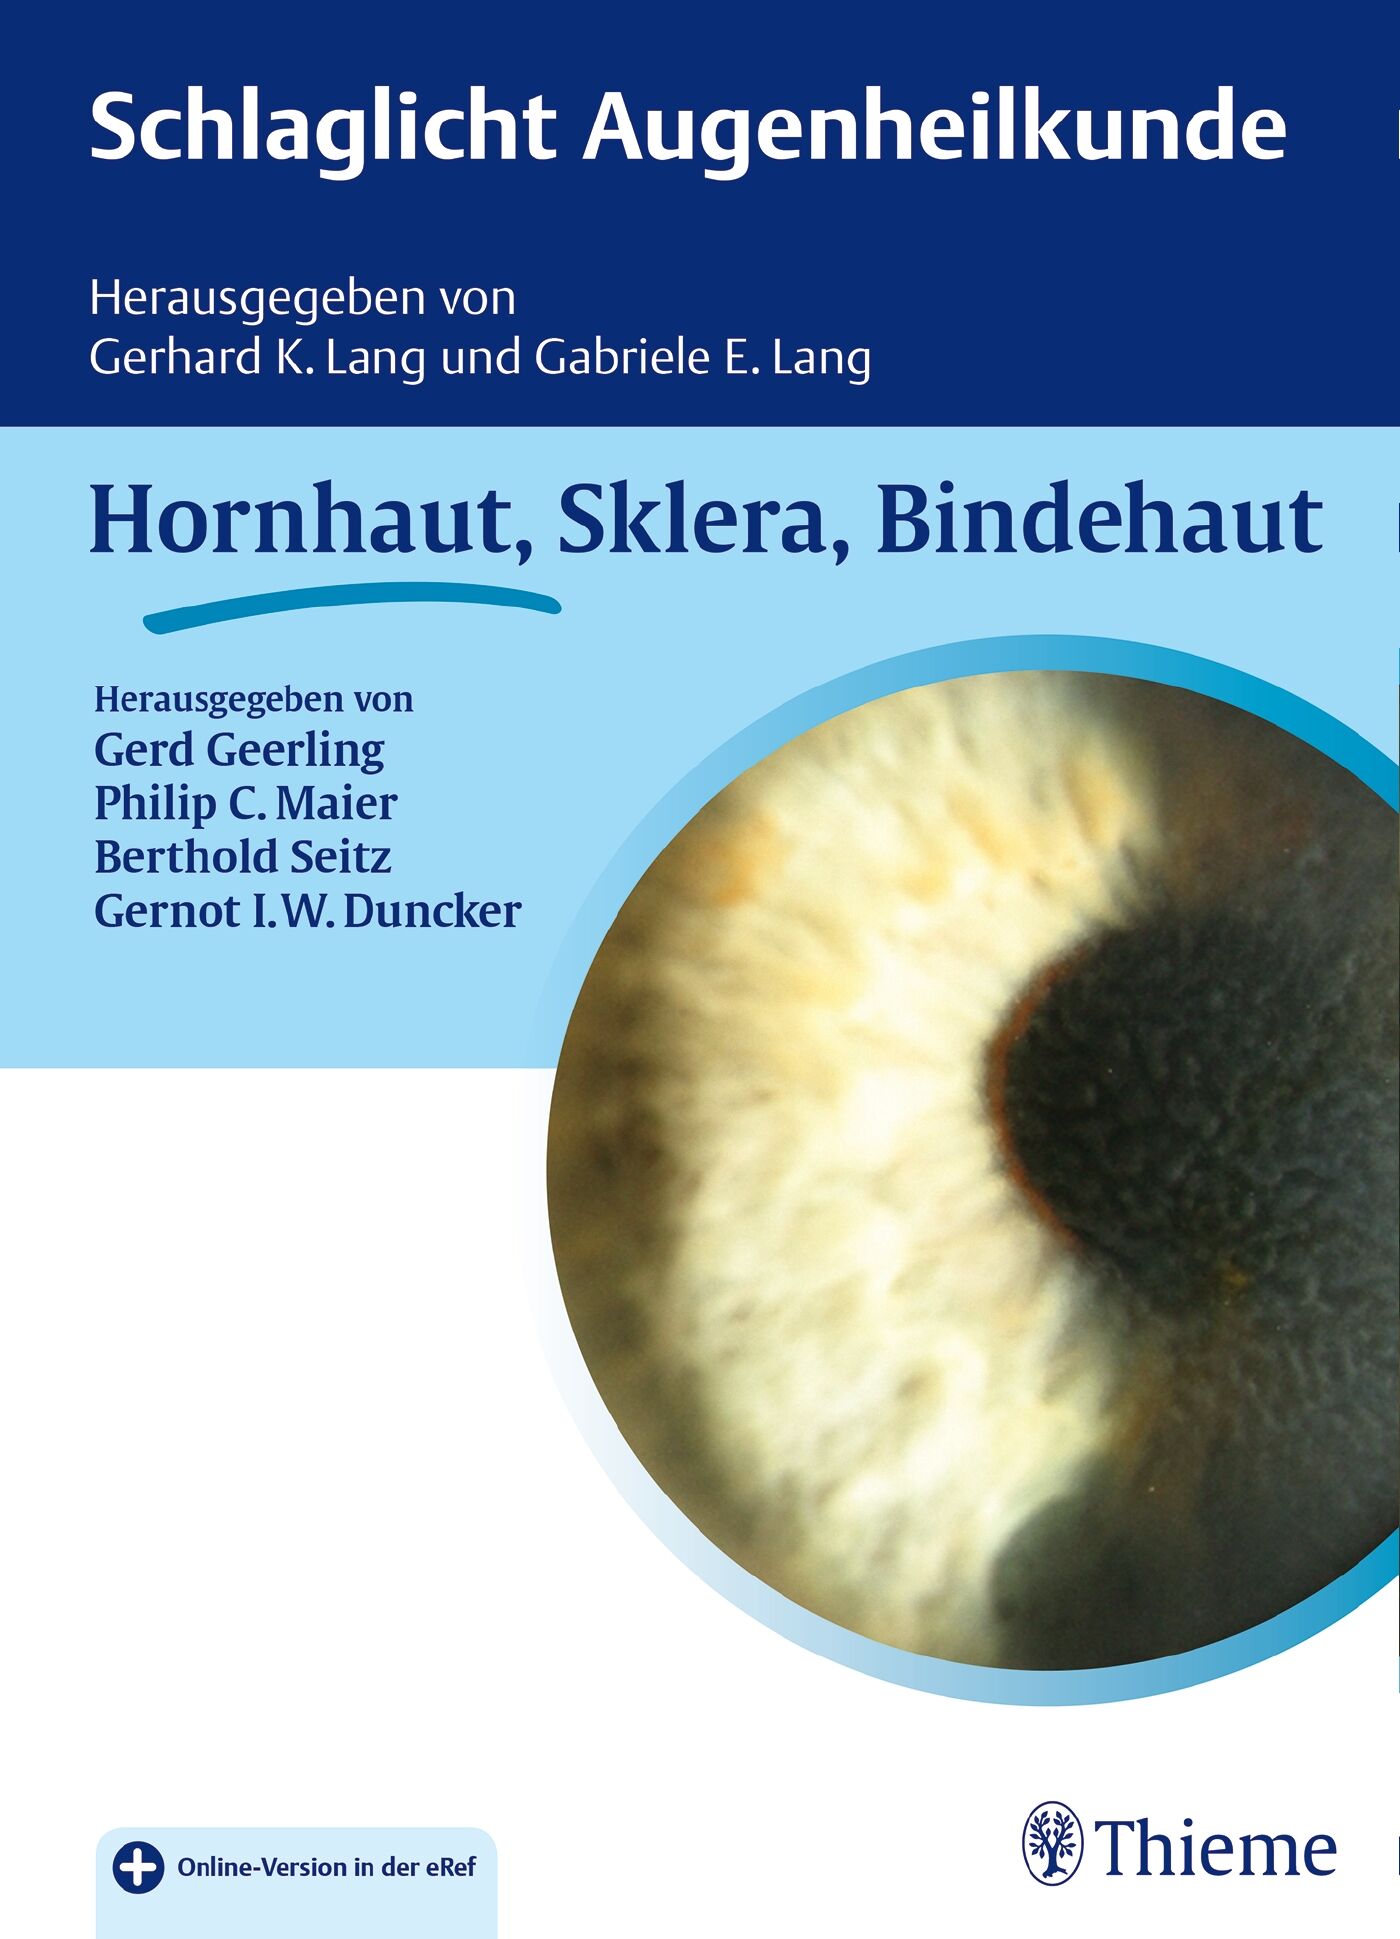 Schlaglicht Augenheilkunde: Hornhaut, Sklera, Bindehaut, 9783132030817